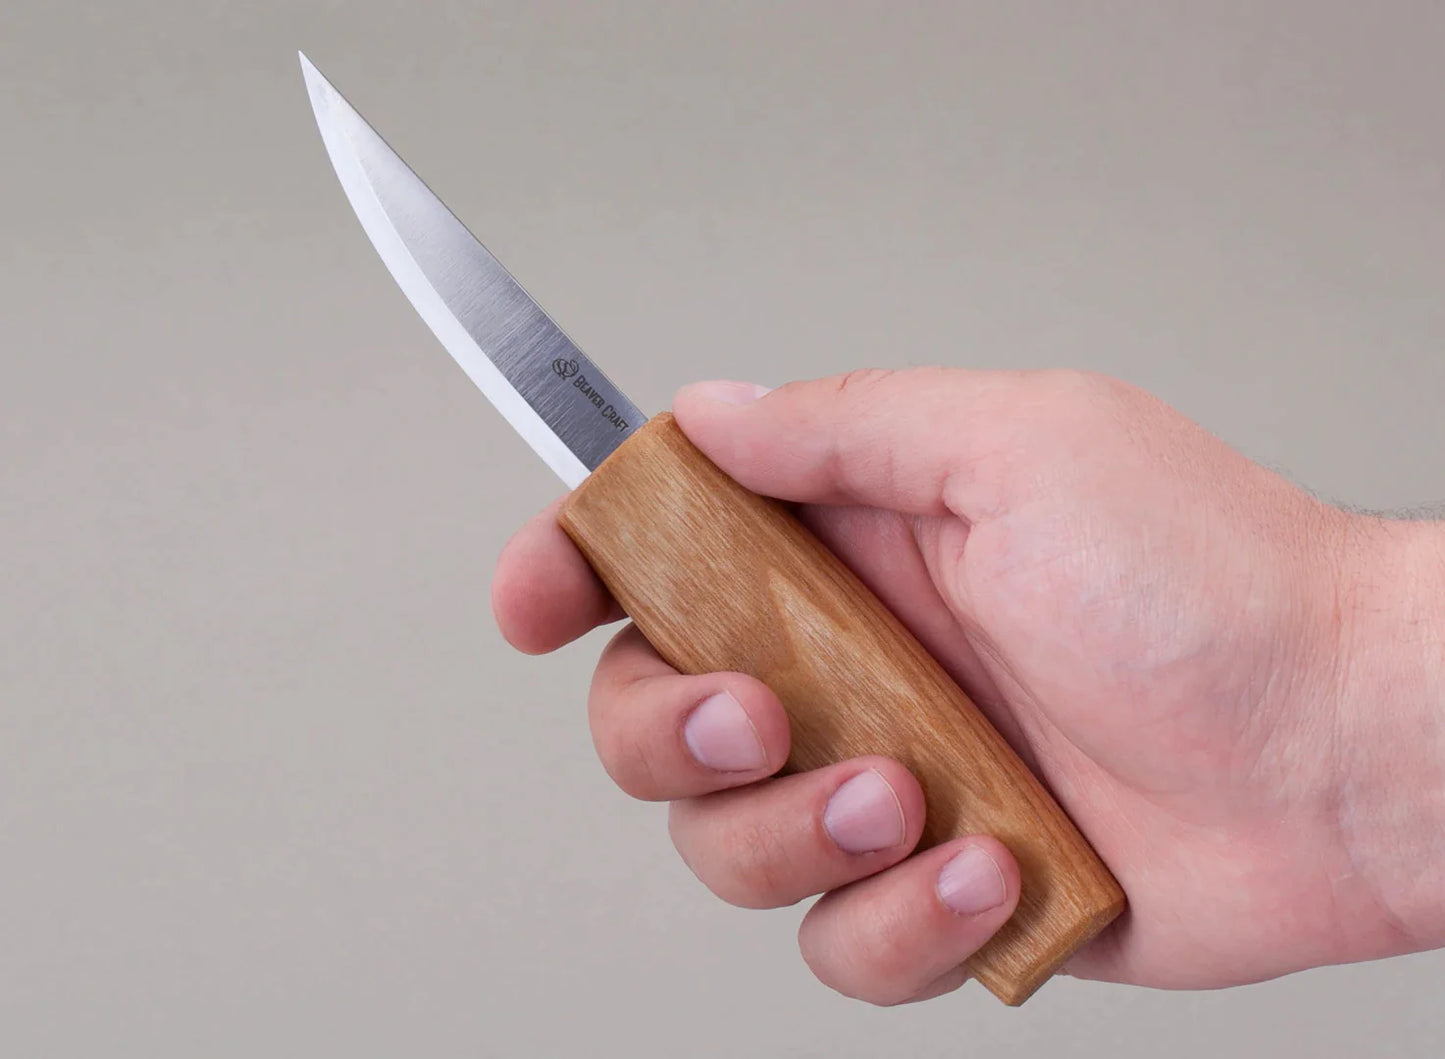 BeaverCraft C4m - Whittling Knife